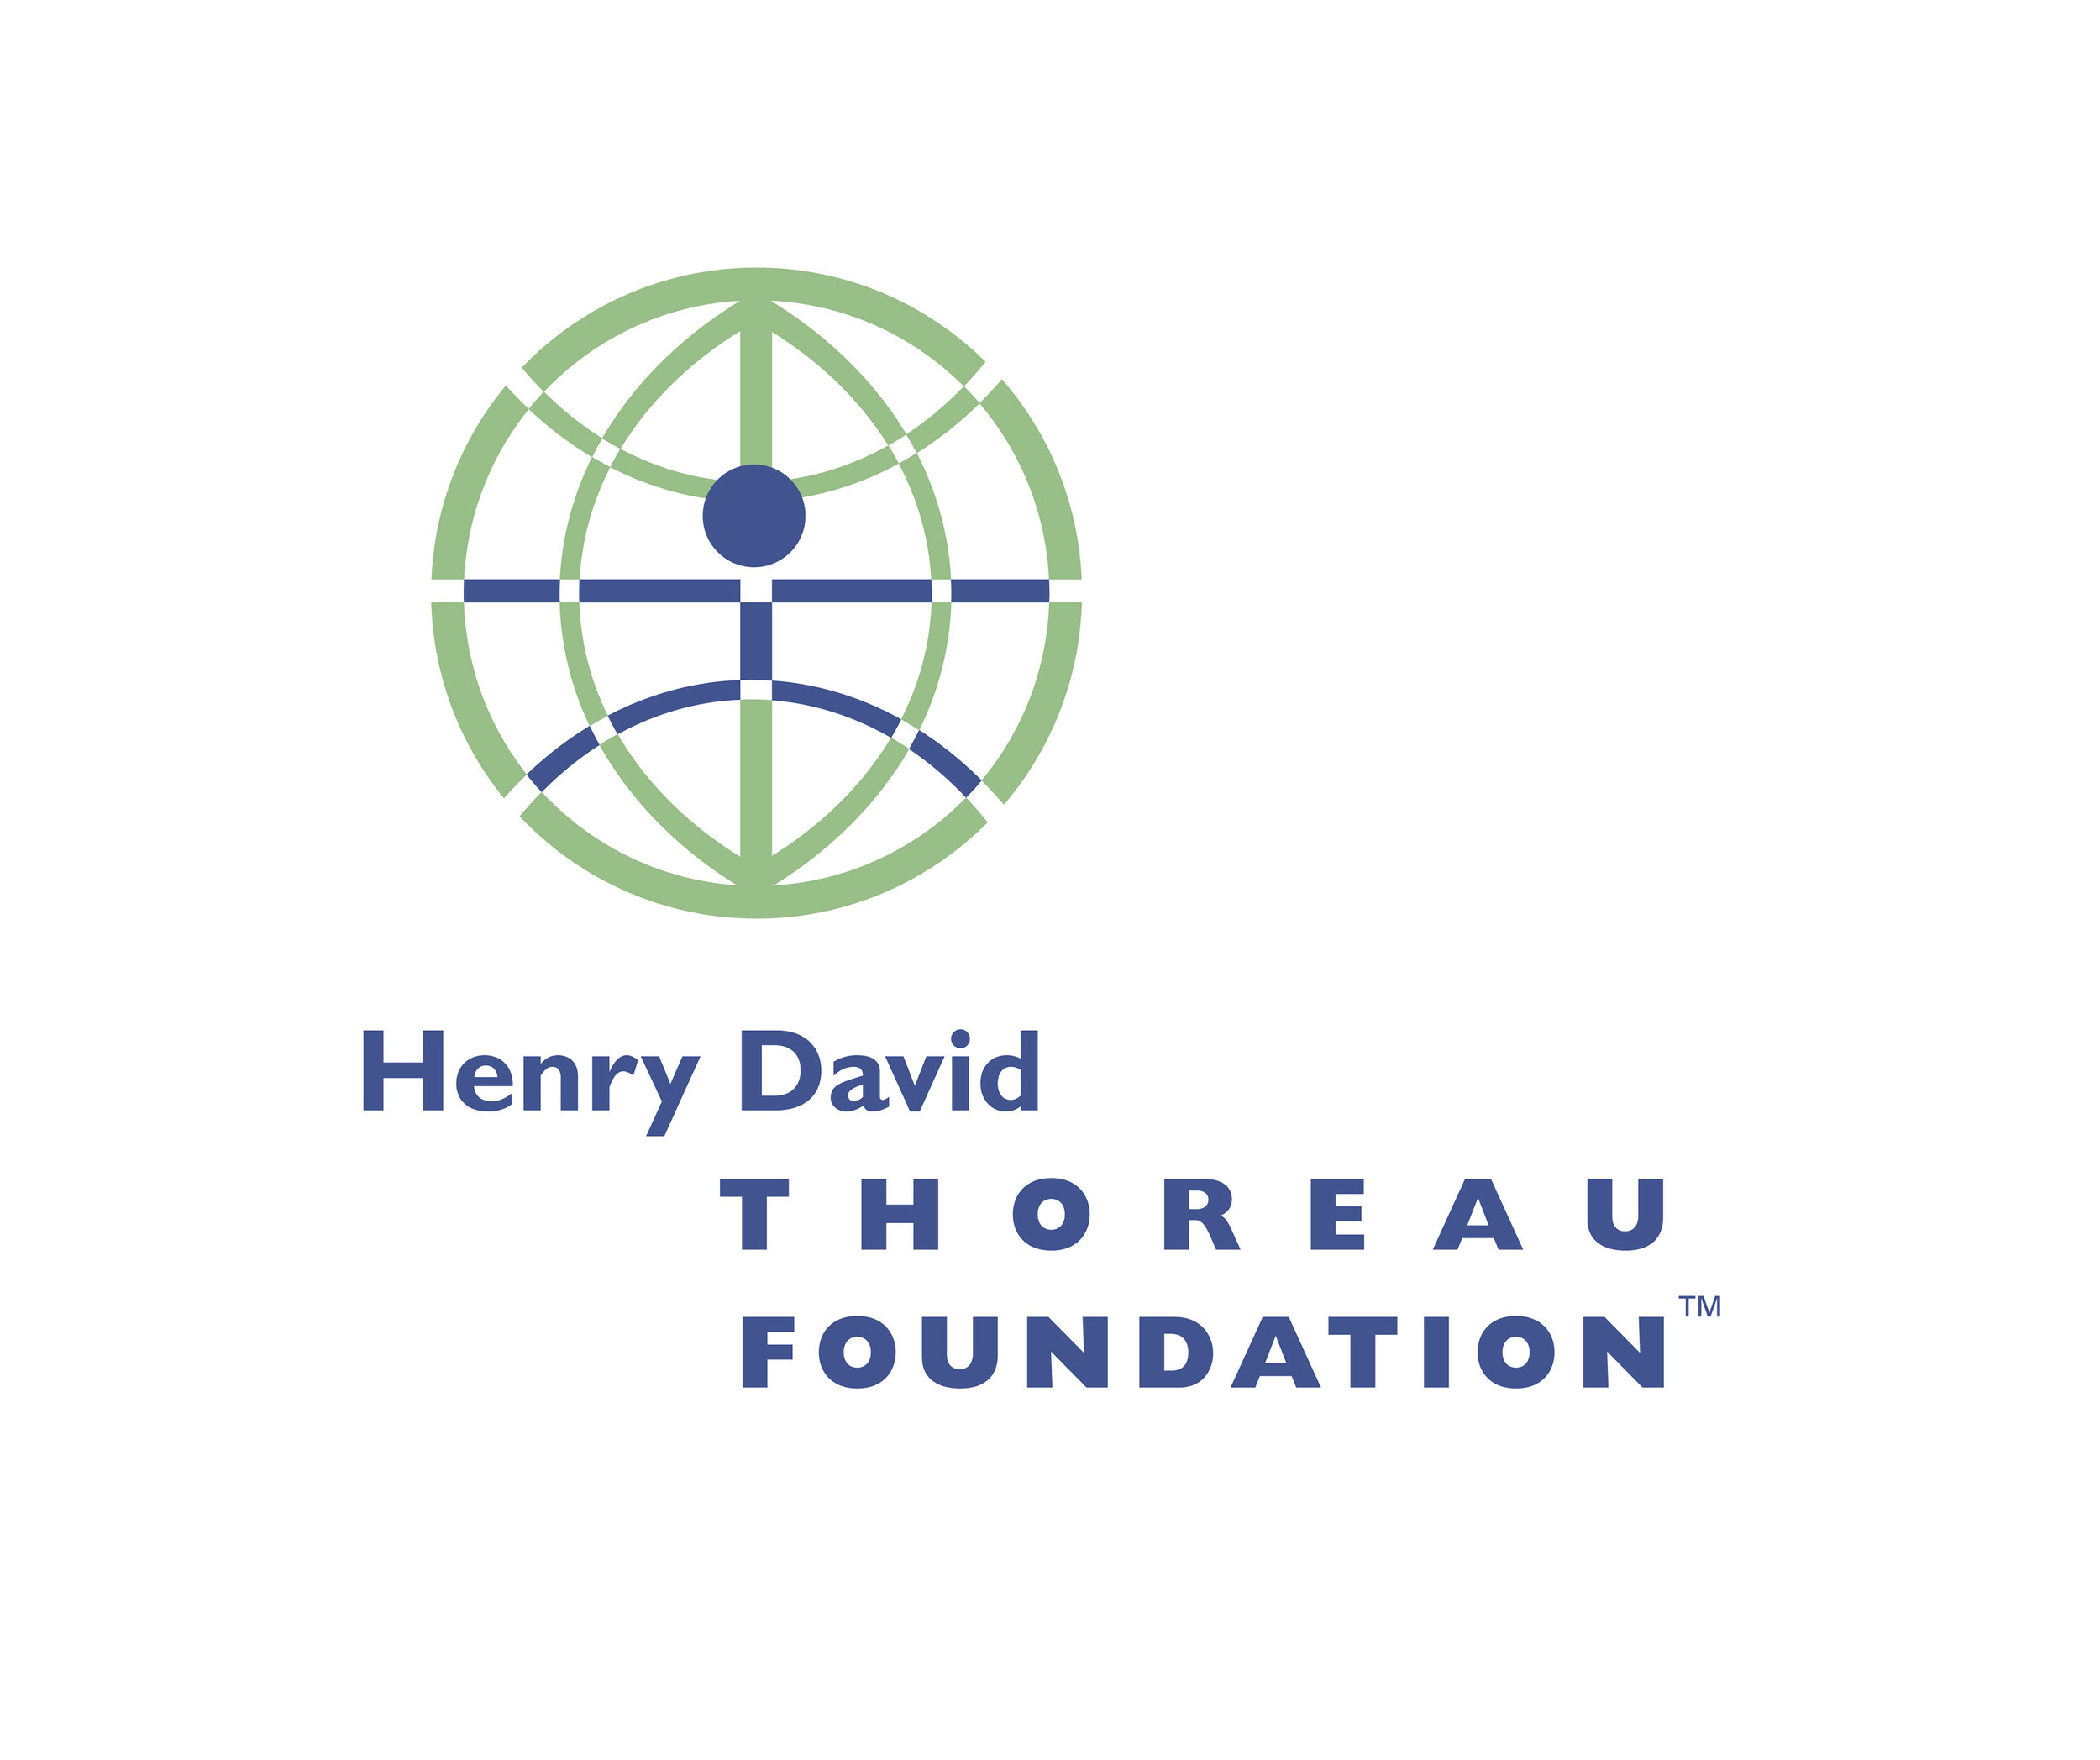 Henry David Thoreau Foundation